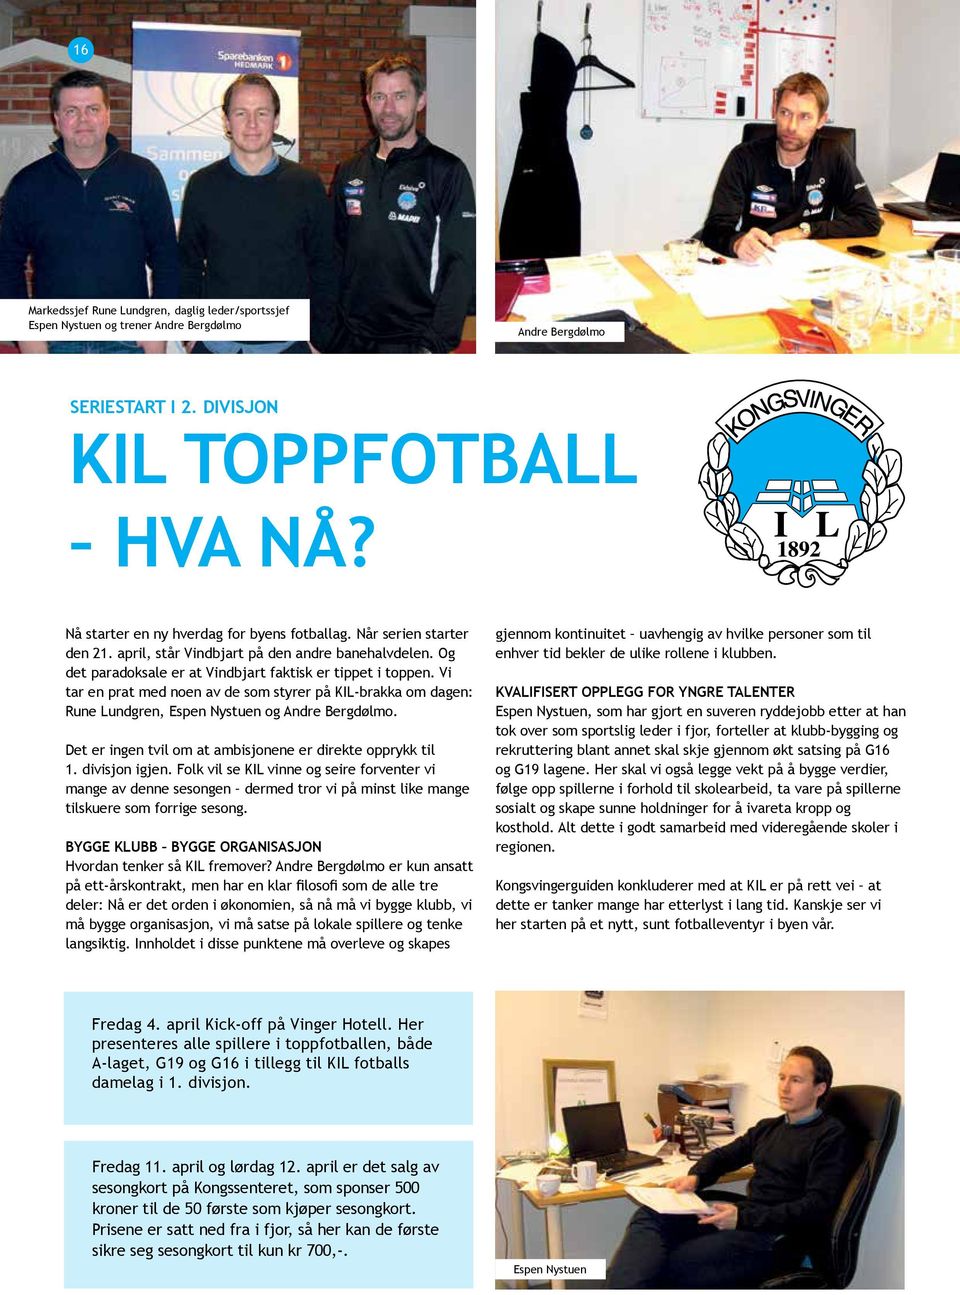 Vi tar en prat med noen av de som styrer på KIL-brakka om dagen: Rune Lundgren, Espen Nystuen og Andre Bergdølmo. Det er ingen tvil om at ambisjonene er direkte opprykk til 1. divisjon igjen.